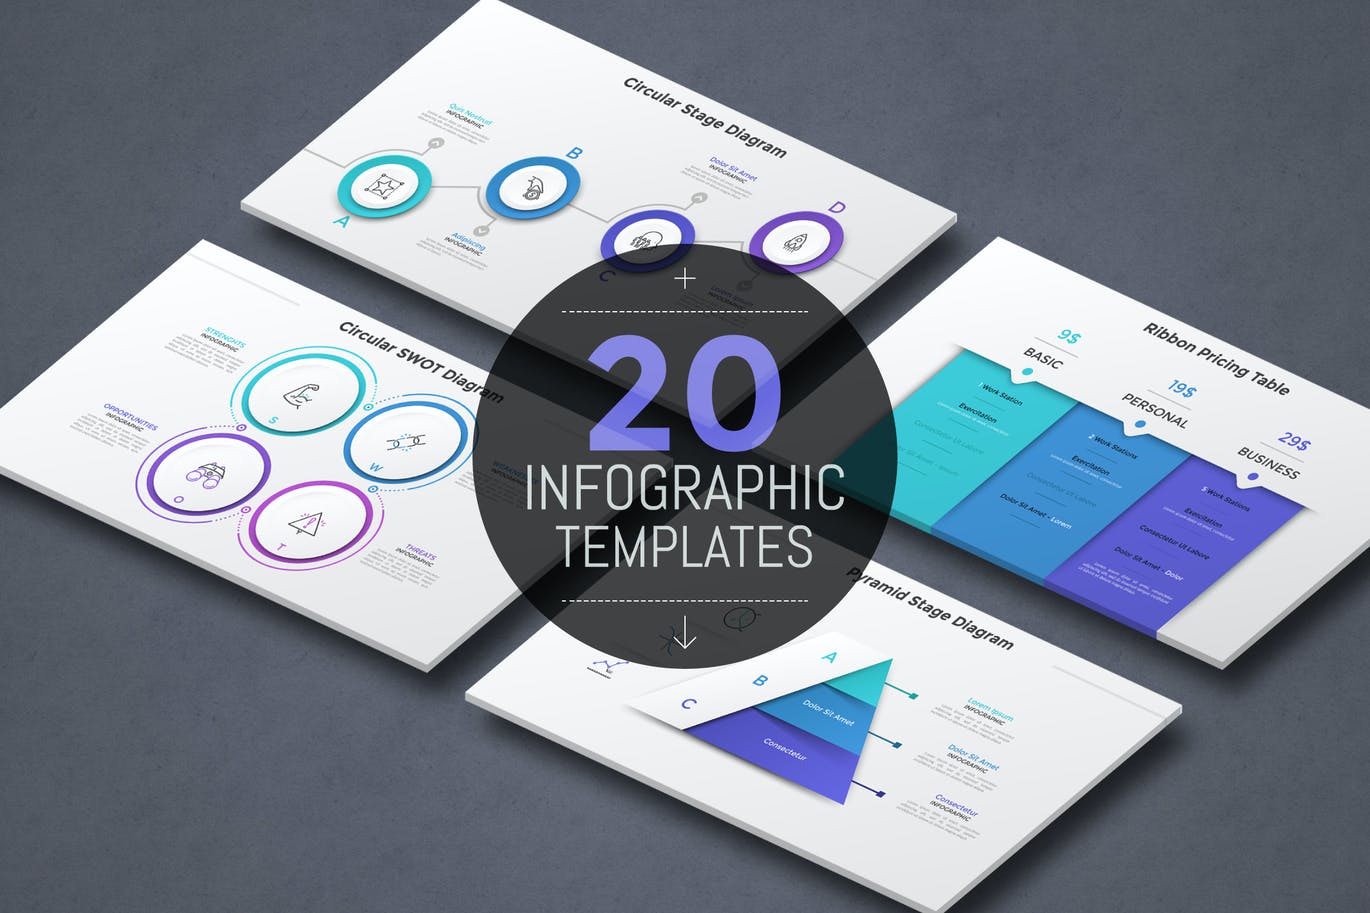 20个彩色纸风格现代信息图表模板 20 Infographic Templates v.8 幻灯图表 第1张